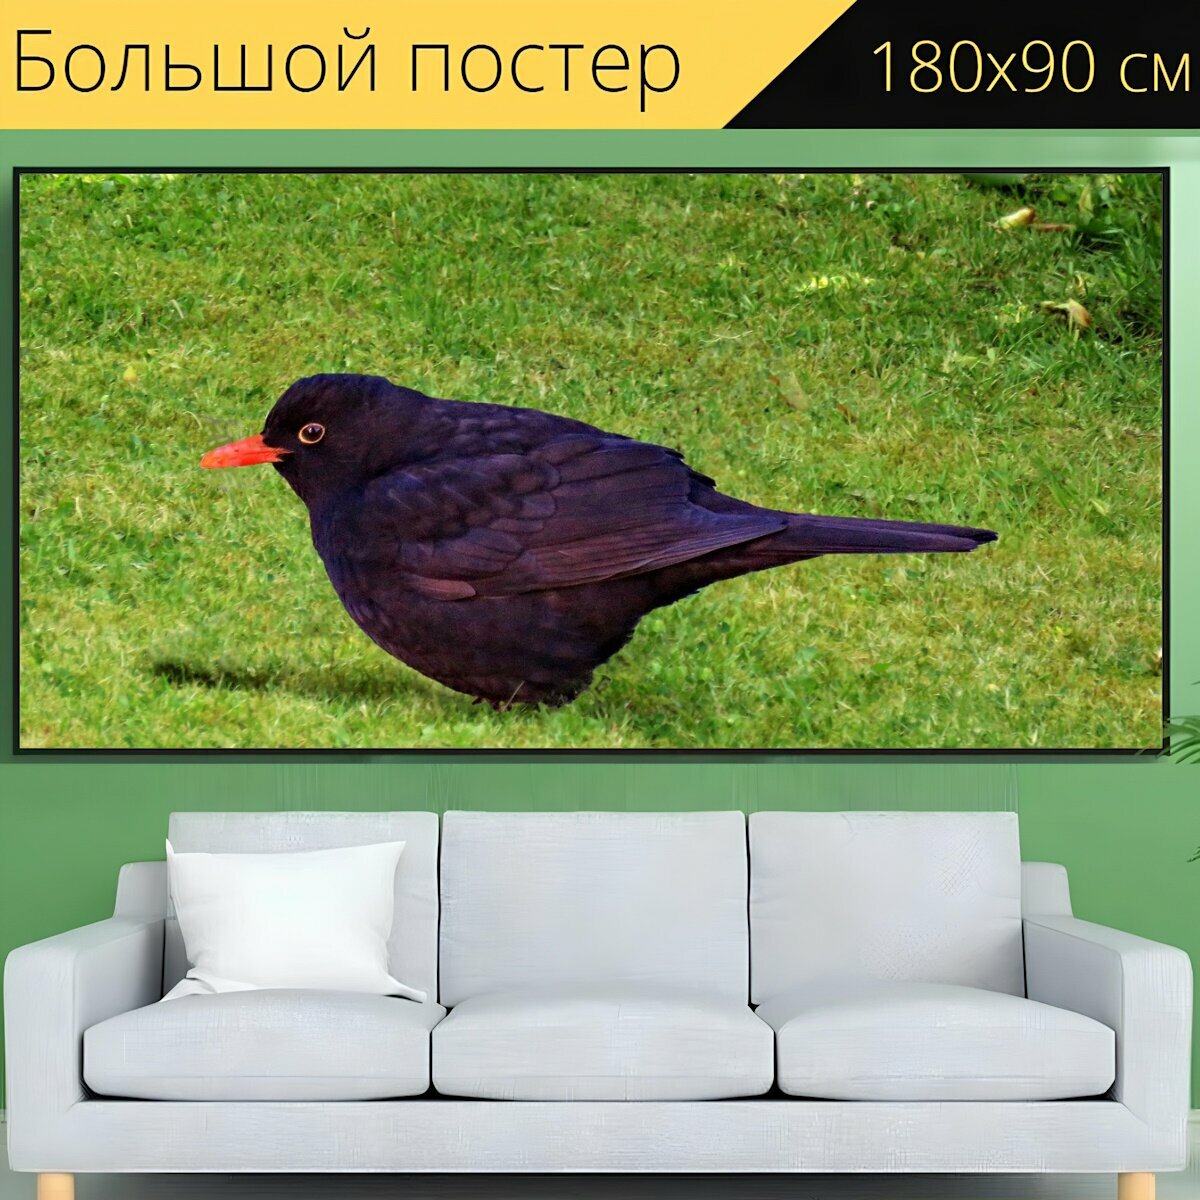 Большой постер "Птица, черный дрозд, певчая птица" 180 x 90 см. для интерьера